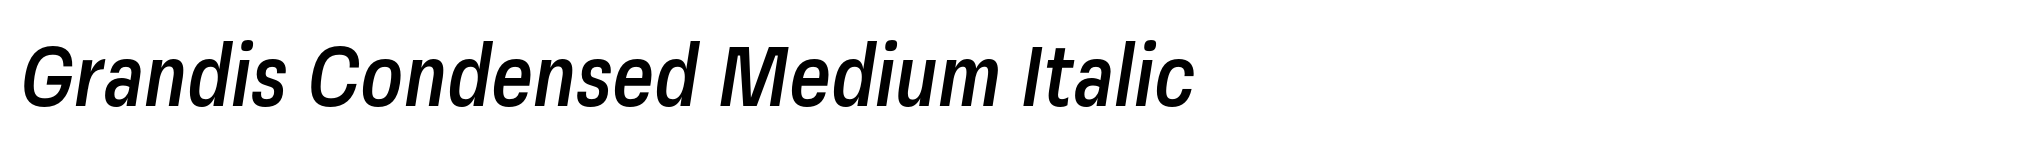 Grandis Condensed Medium Italic image